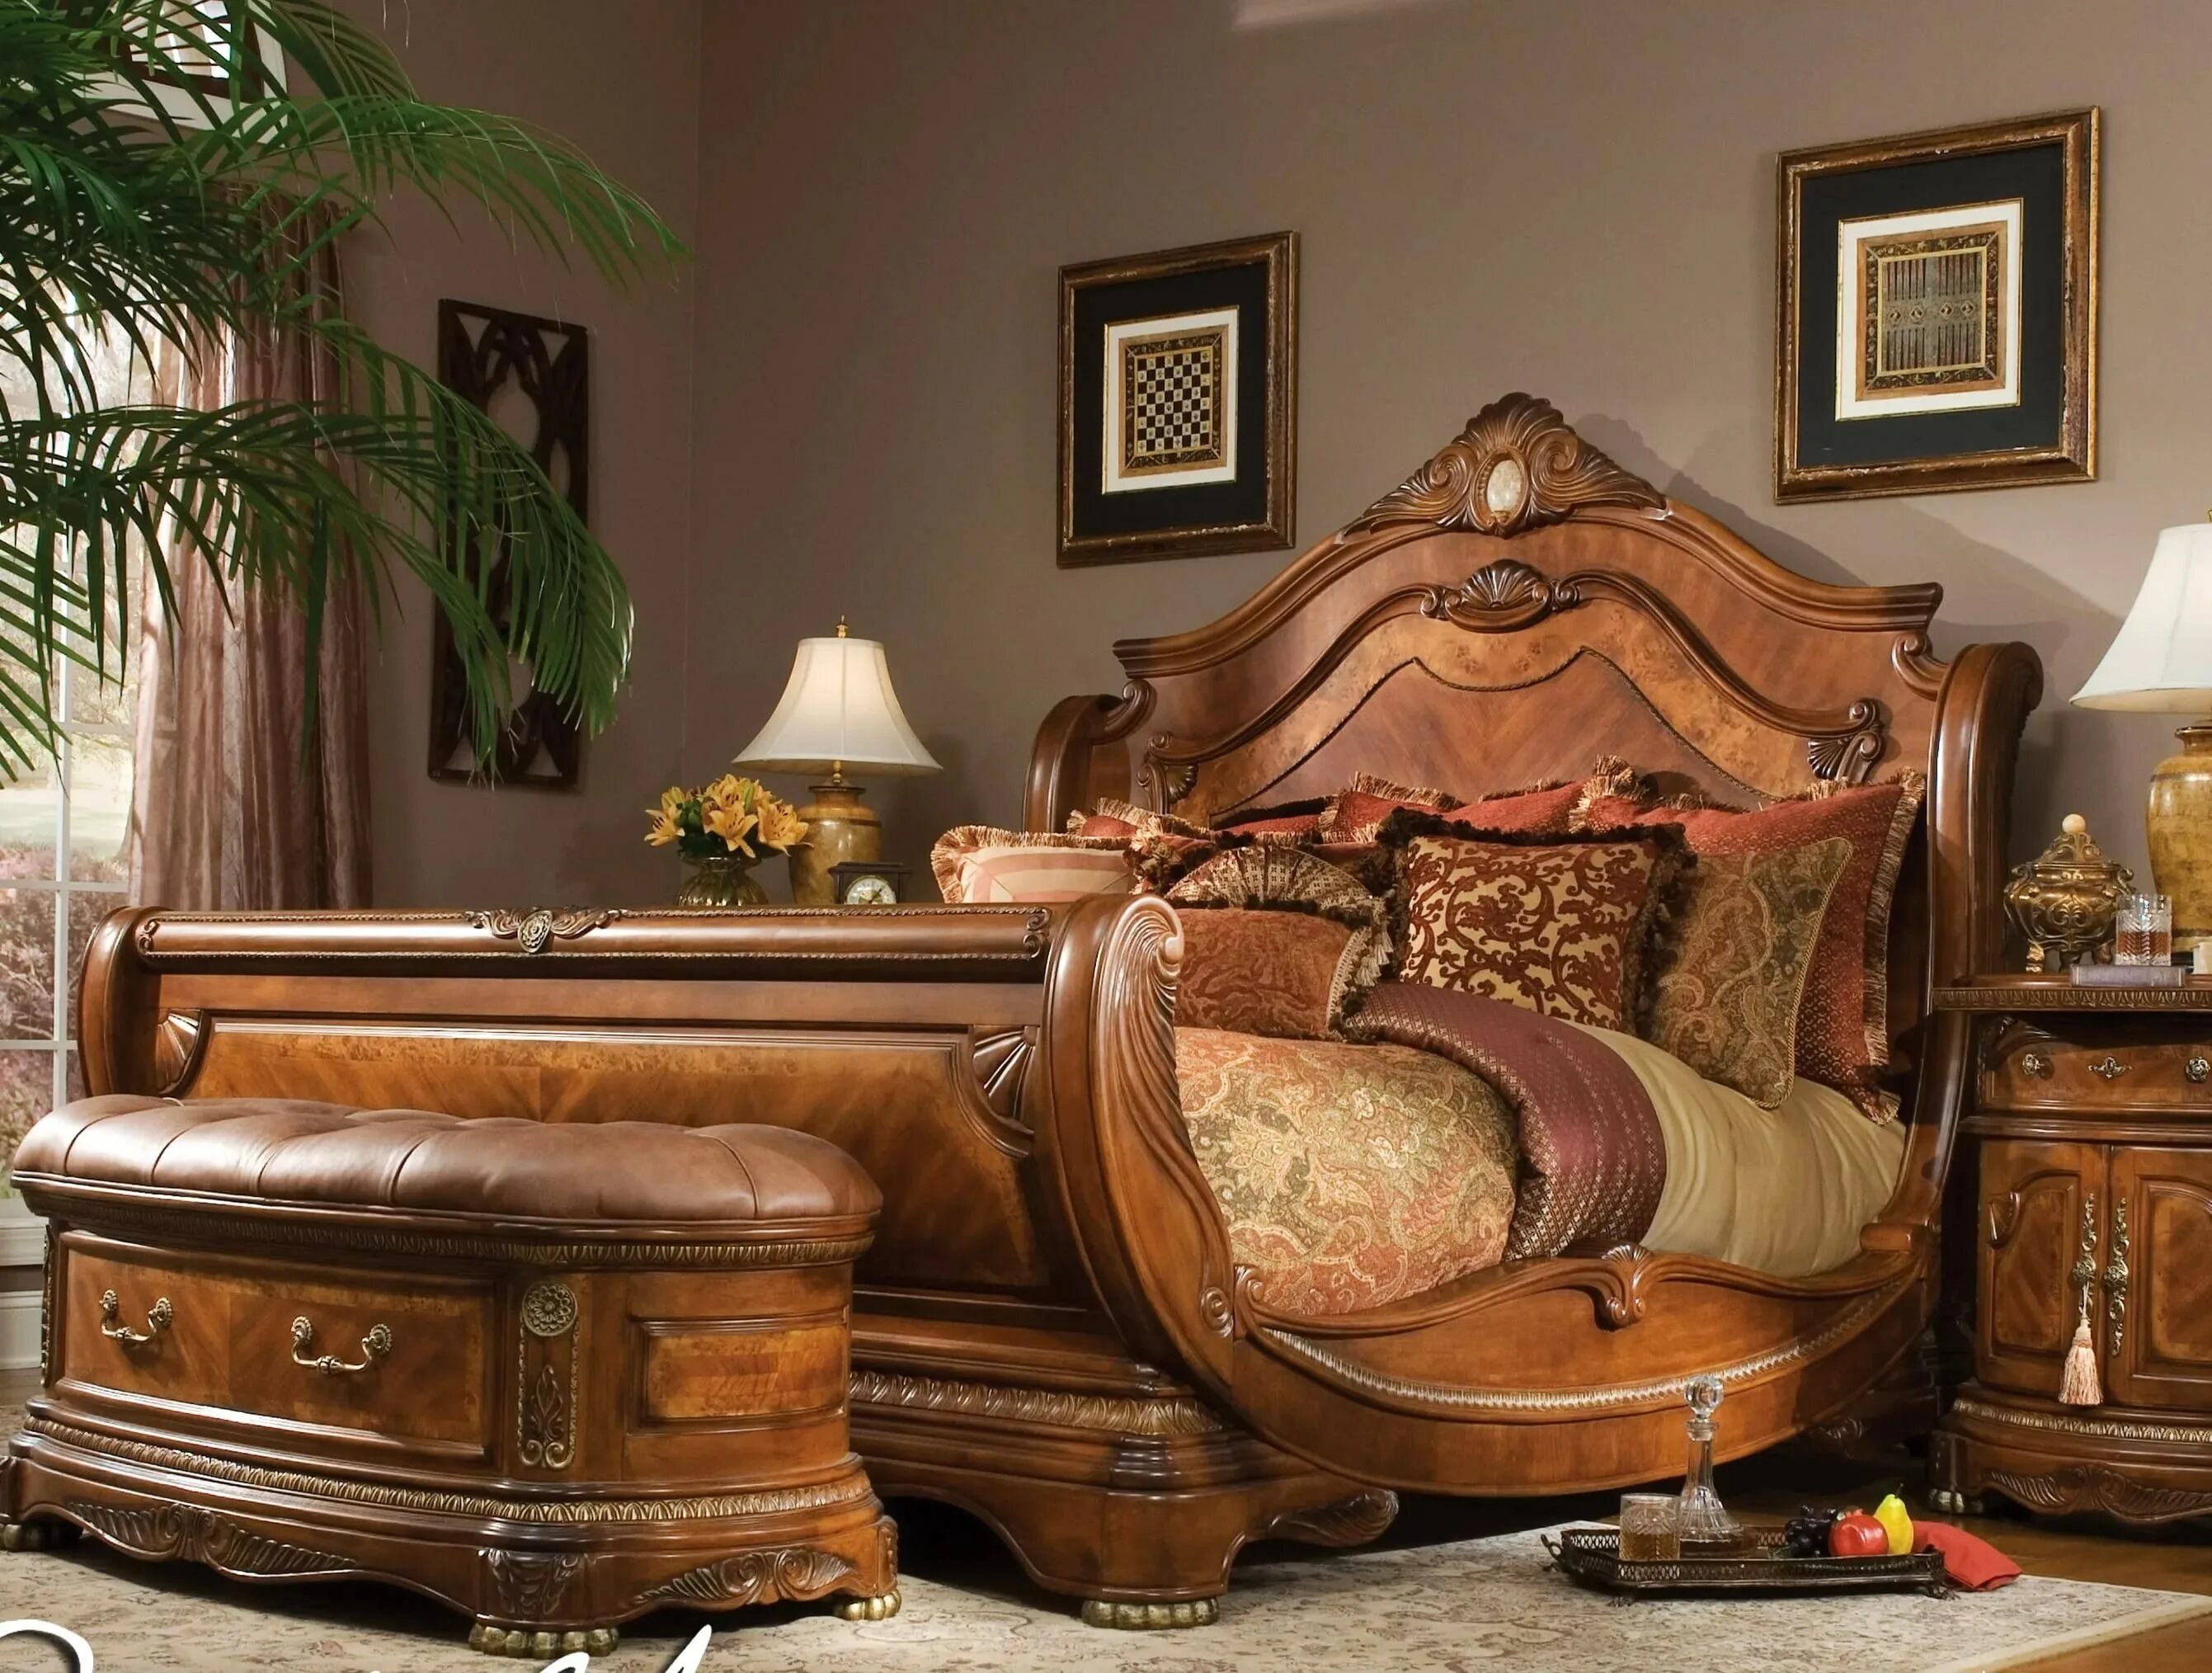 Сайты мебели из массива. Кровать: Michael Amini кровать Cortina. Красивая деревянная мебель. Дорогая мебель. Красивая дорогая мебель.